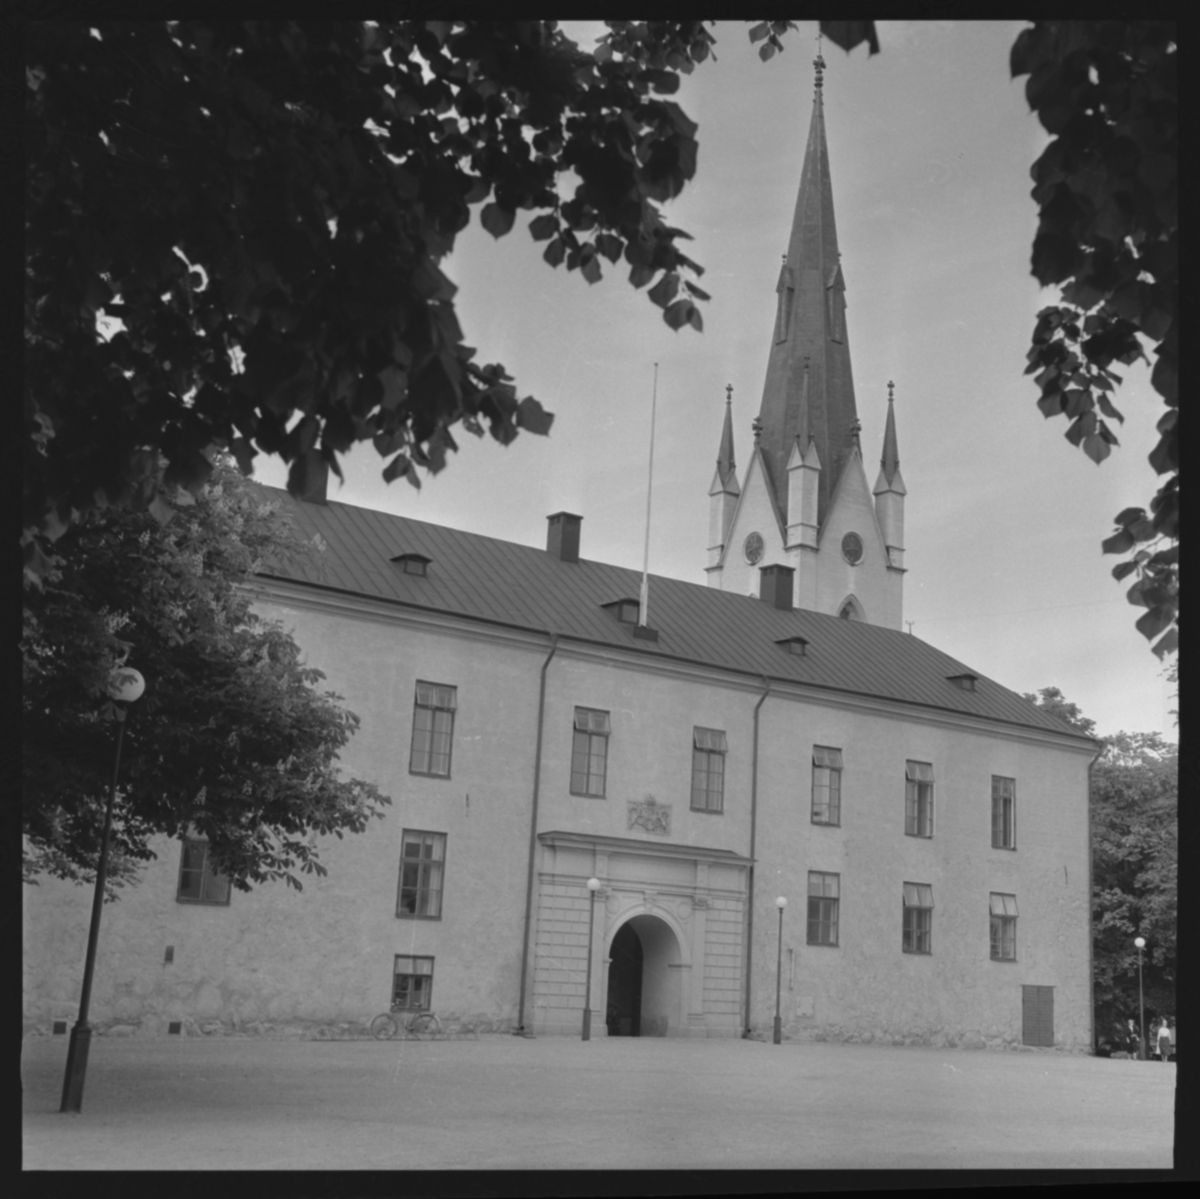 Linköpings slott sett från Yttre borggården.

Slottet uppfördes på 1500-talet i medeltida stil. Under medeltiden och fram till reformationen bodde biskoparna på slottet, efter en dekadansperiod rustades slottet och landshövdingarna har bebott det sedan 1785. Upprustningen avslutades 1888. Åren 1932-33 skalades 1880-talets dekorationer bort och slottet återgavs en mer återhållsam karaktär.